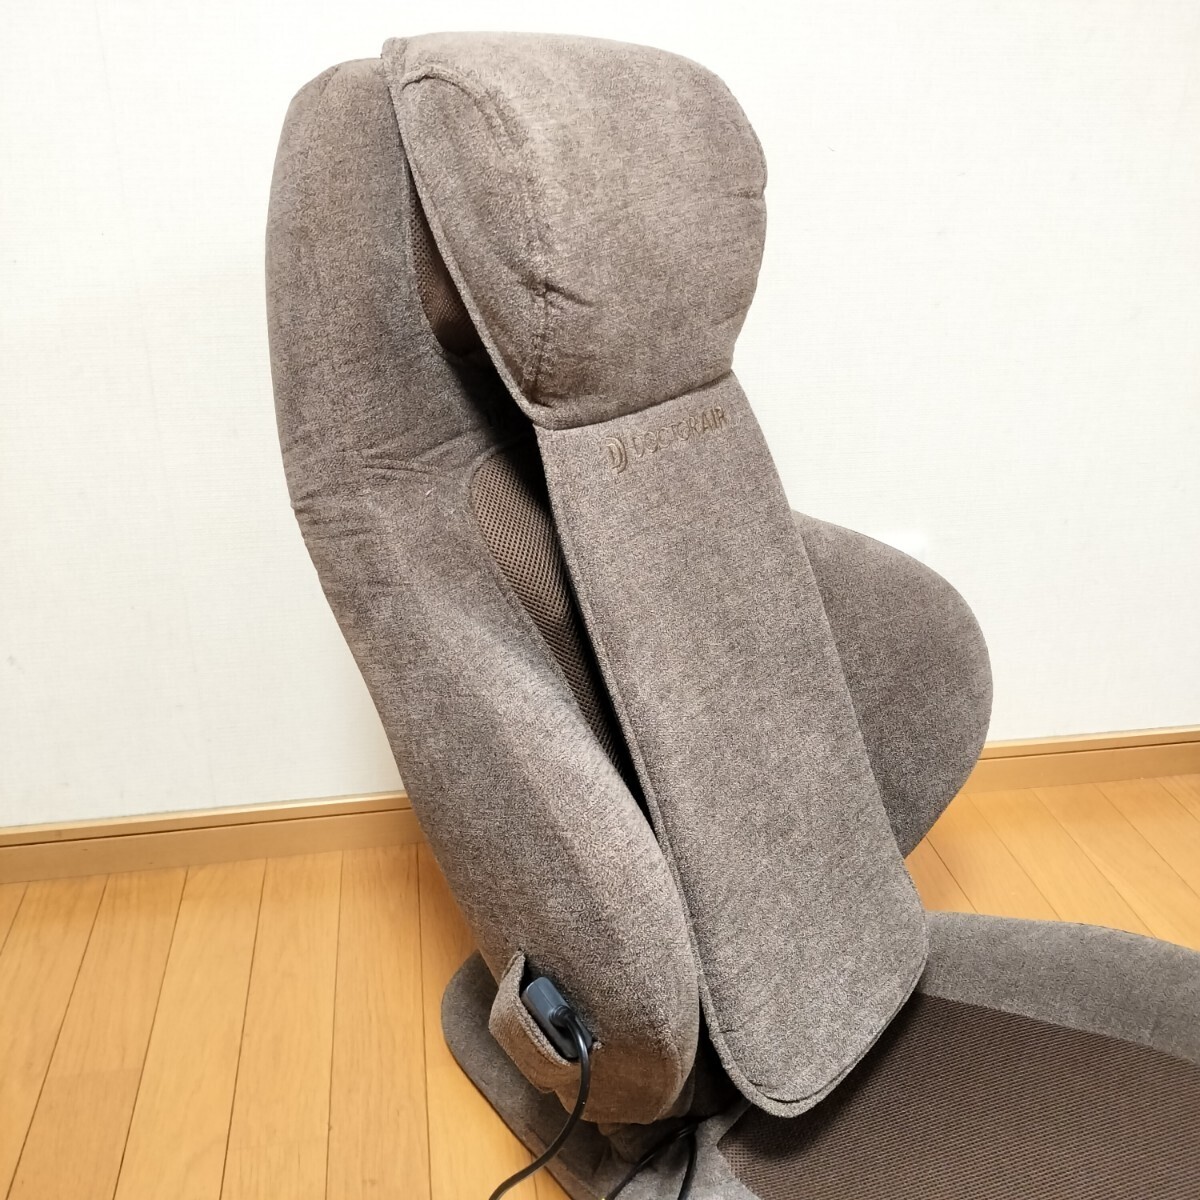 ドクターエア 3D マッサージシート 座椅子 MS-05 ブラウン/リクライニング 首 肩 背中 腰 (マッサージチェア マッサージ機)の画像2